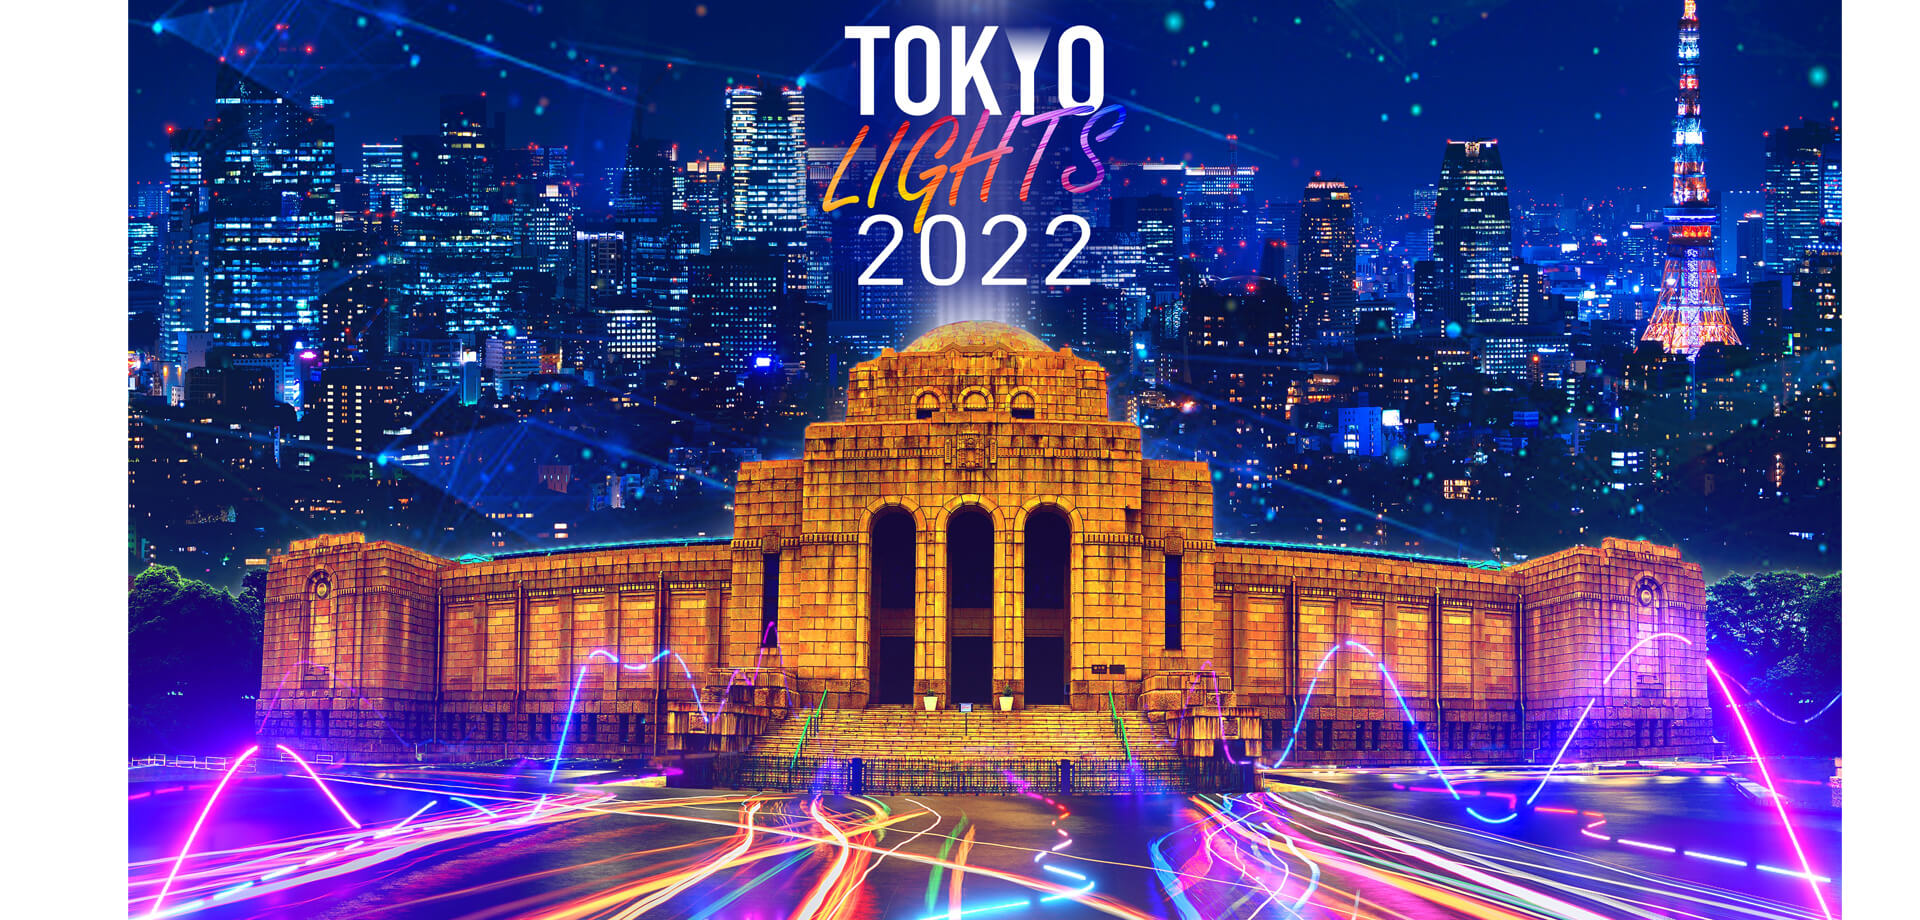 「TOKYO LIGHTS 2022-プロジェクションマッピング国際⼤会-